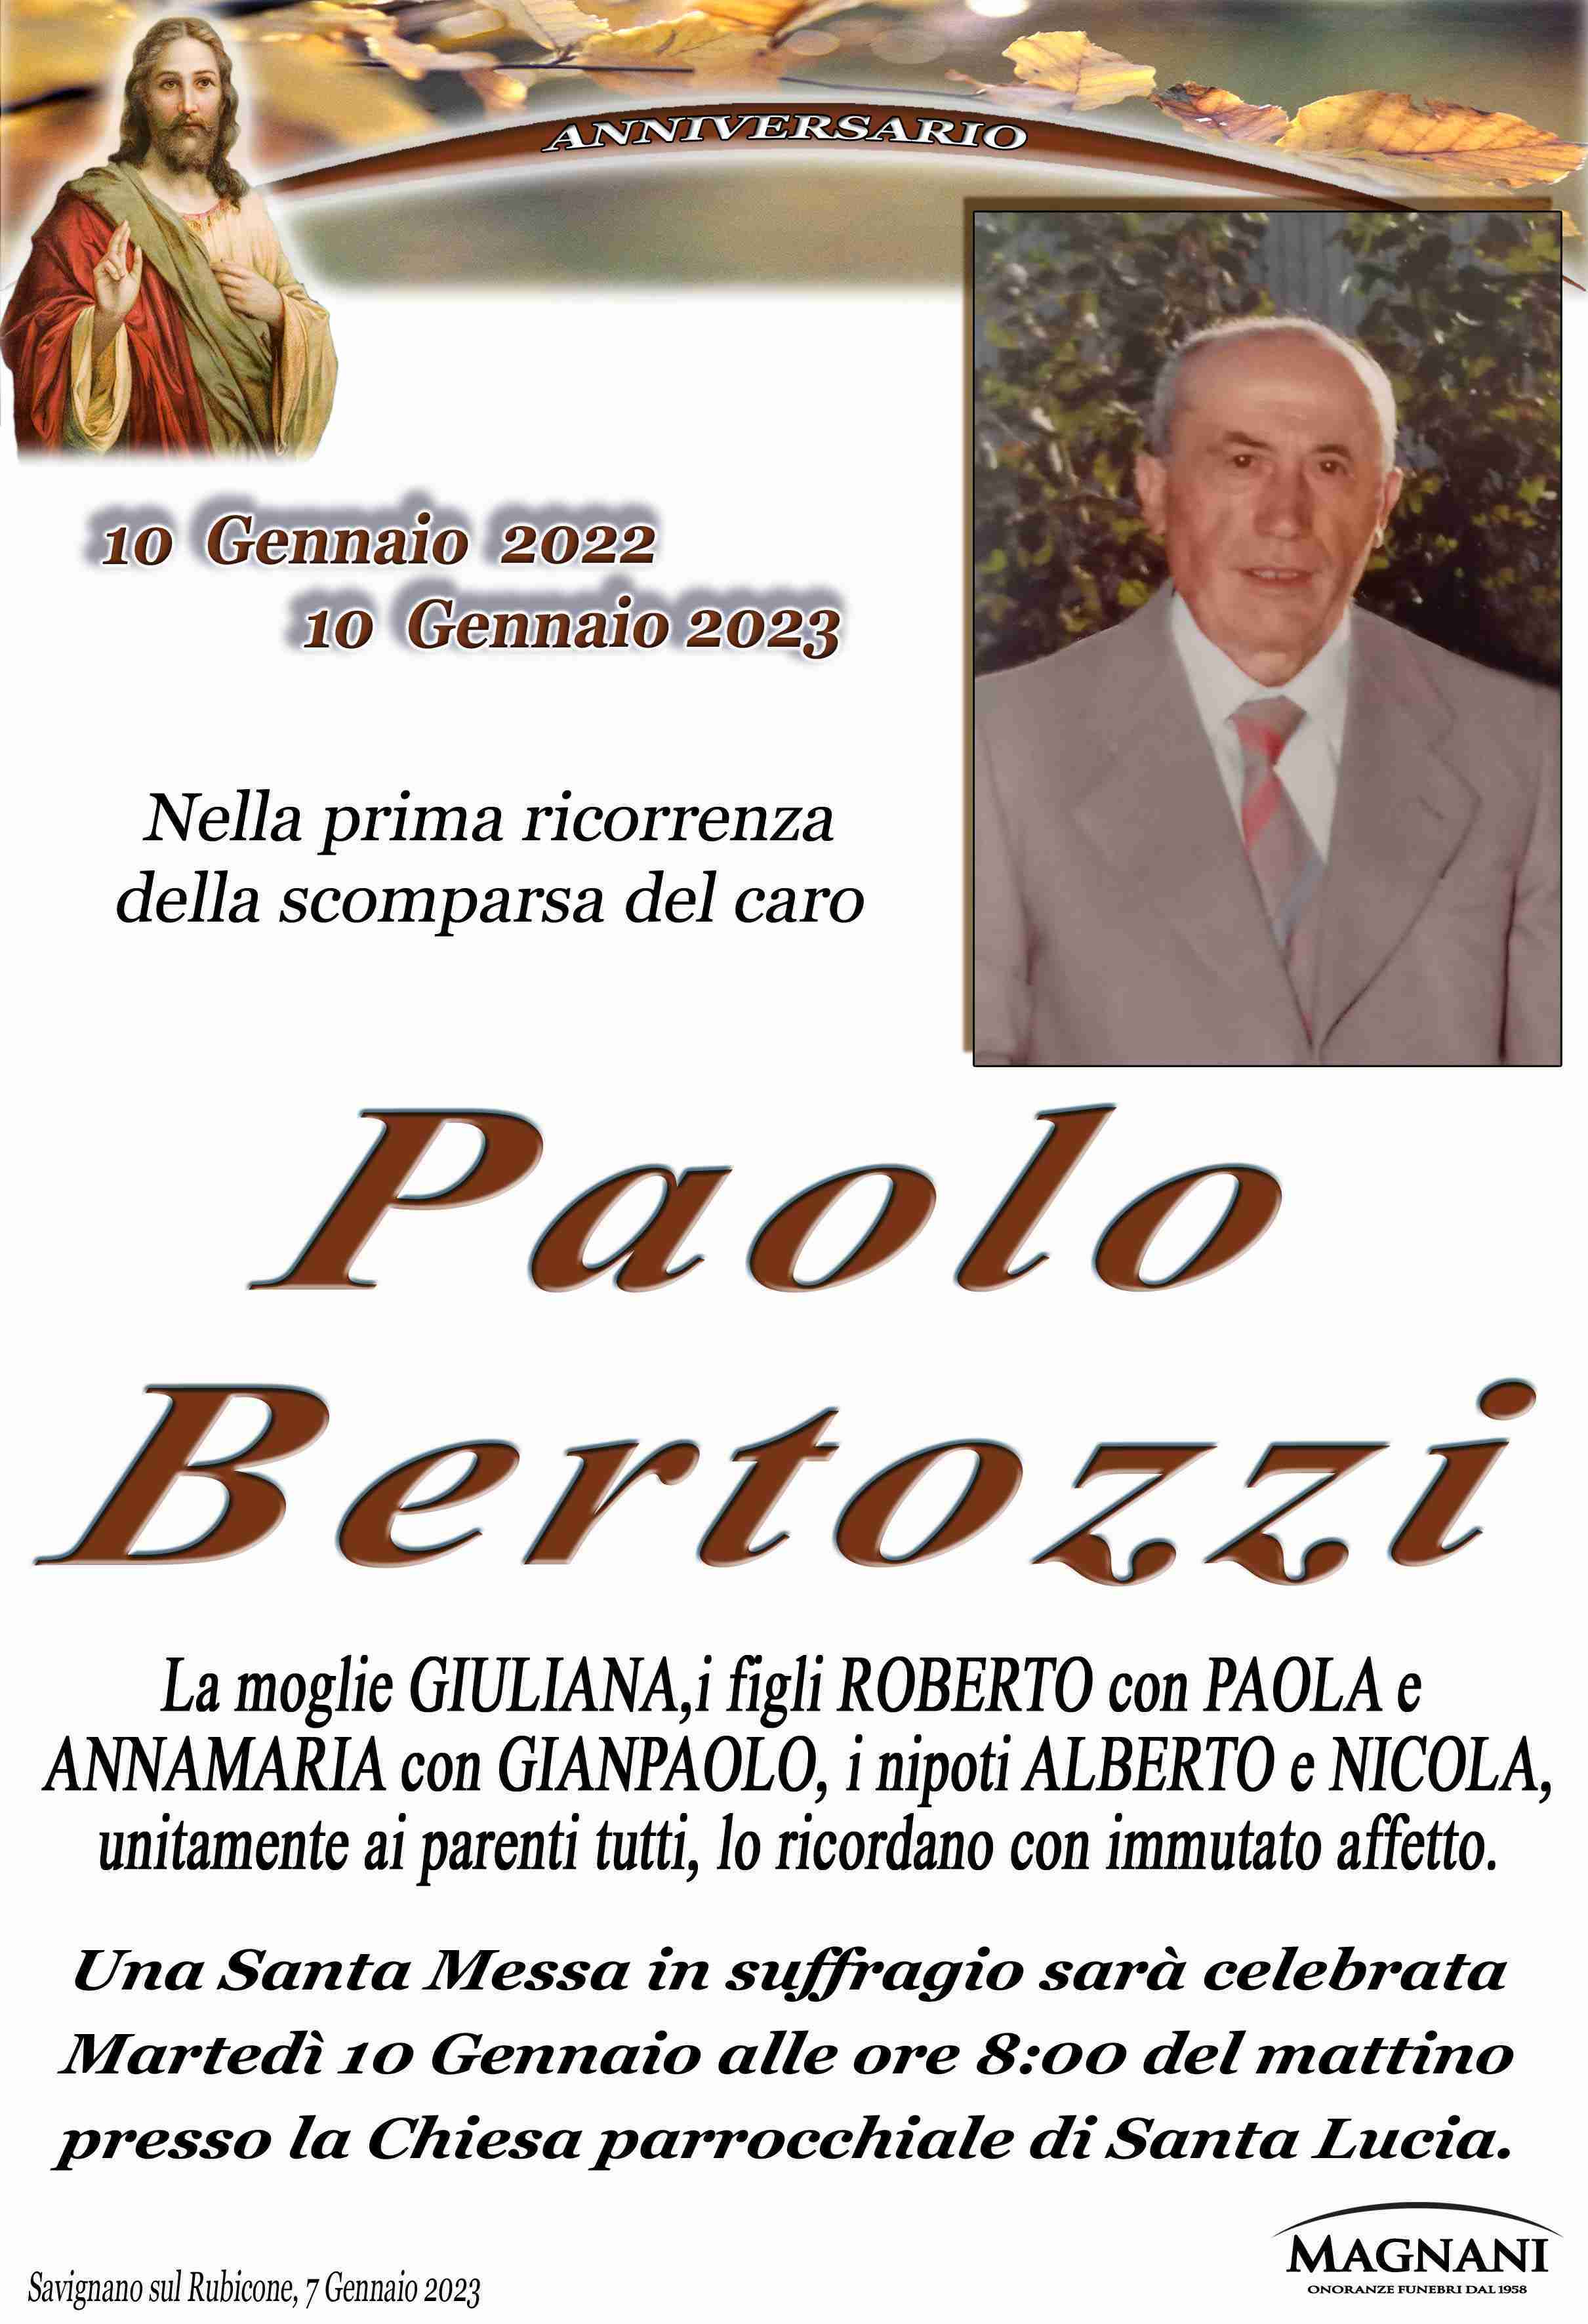 Paolo Bertozzi